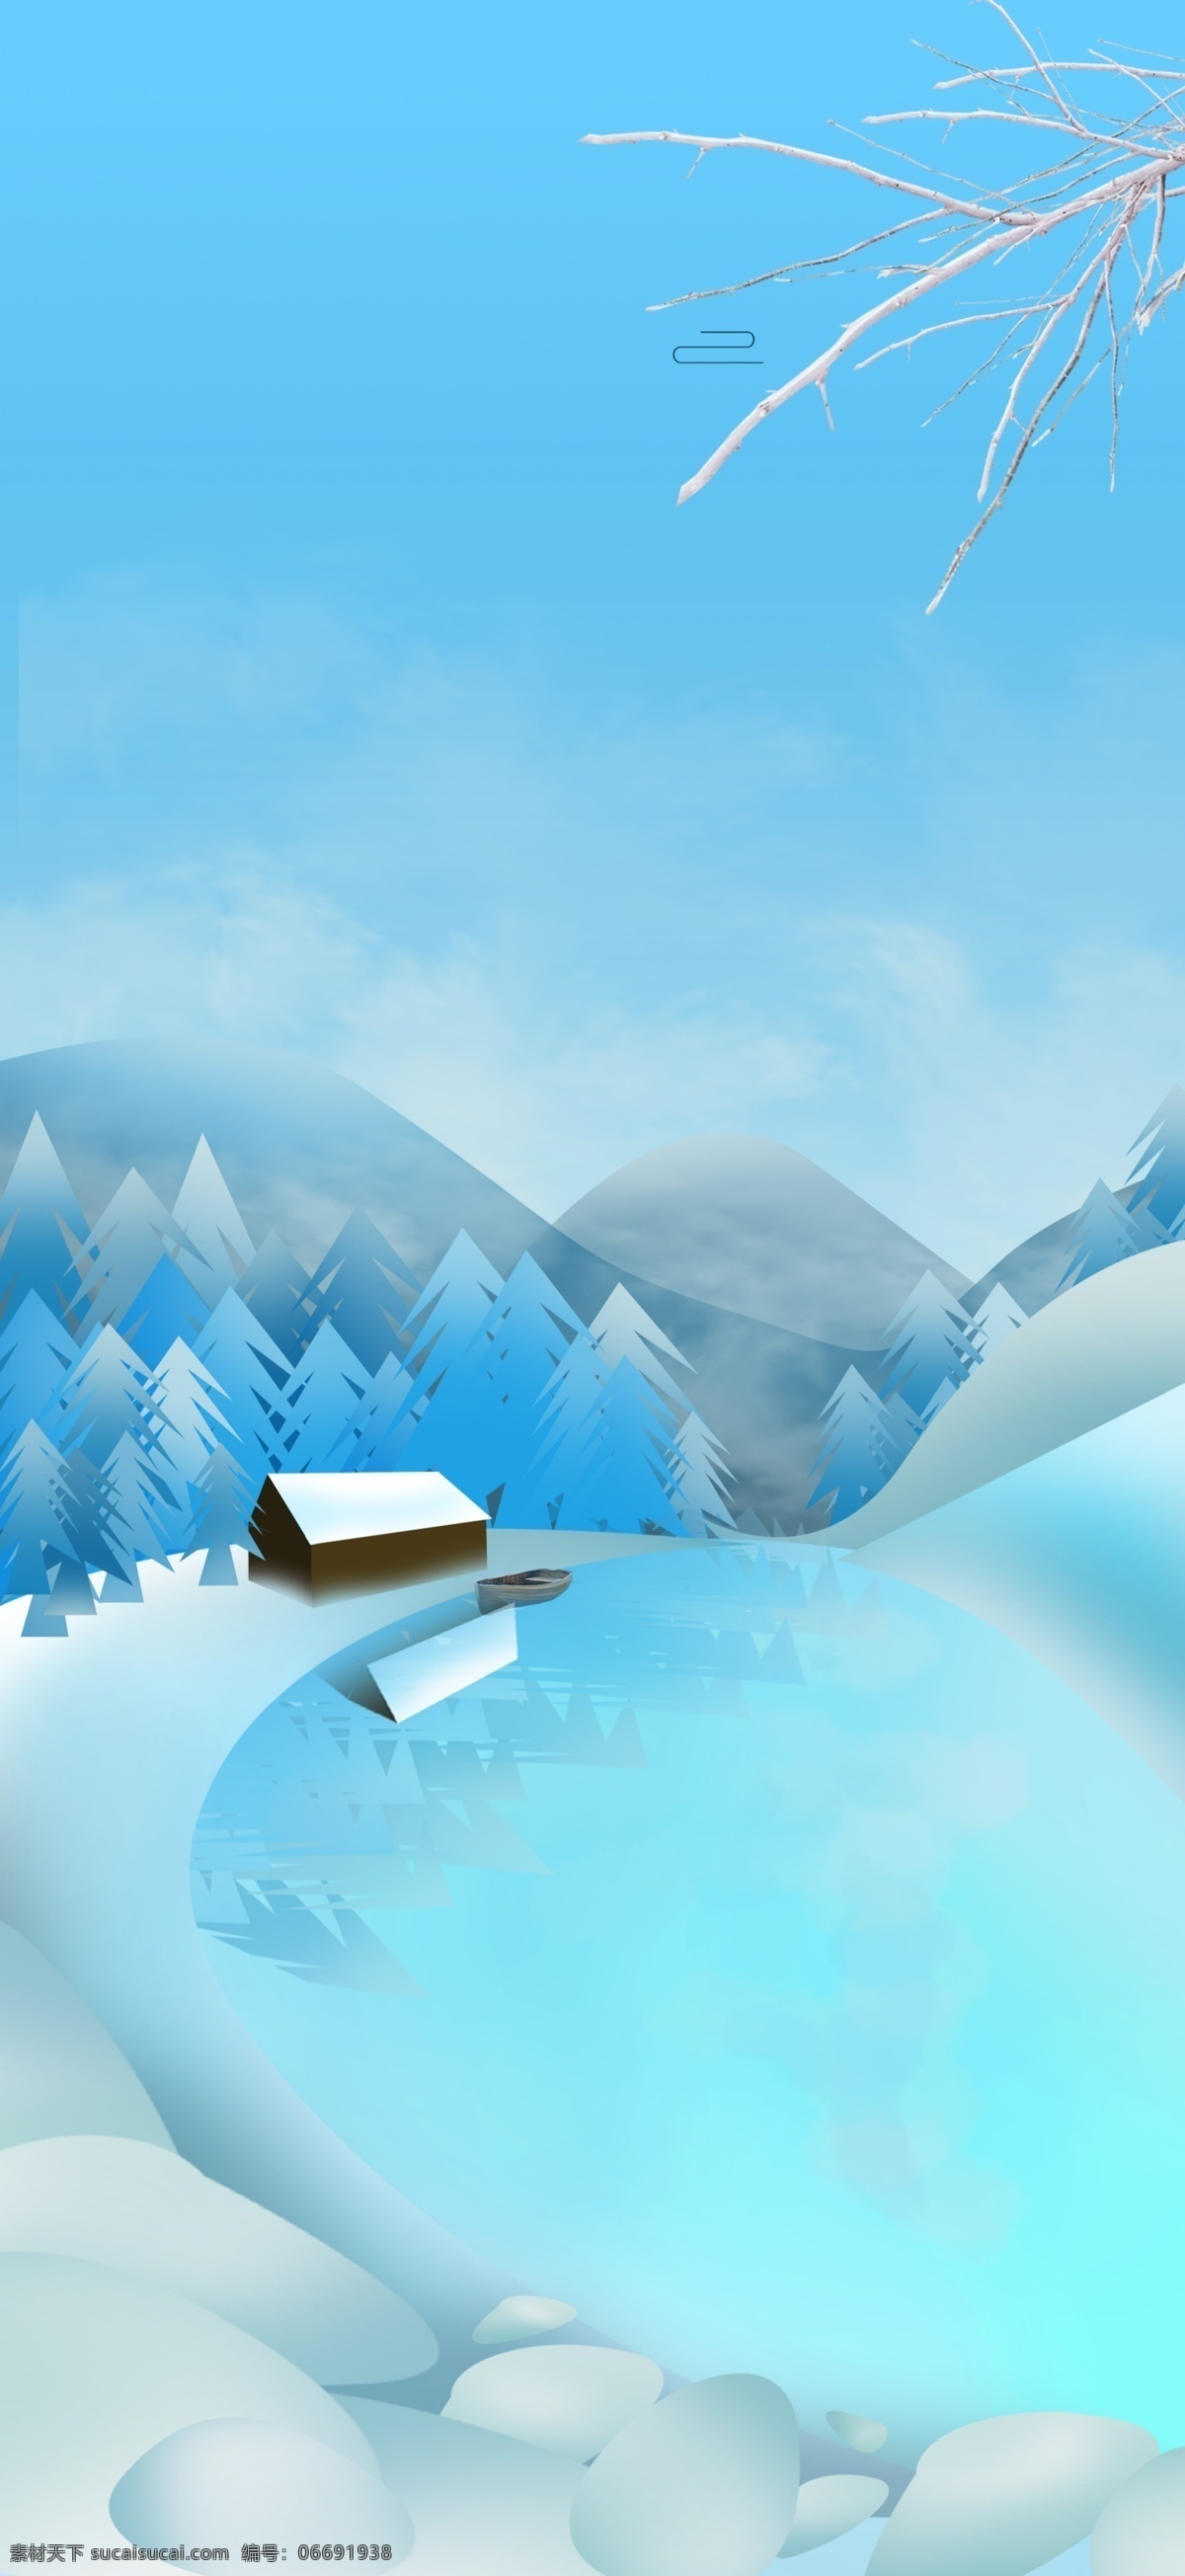 冬天 雪后 山峰 背景 松树 蓝色